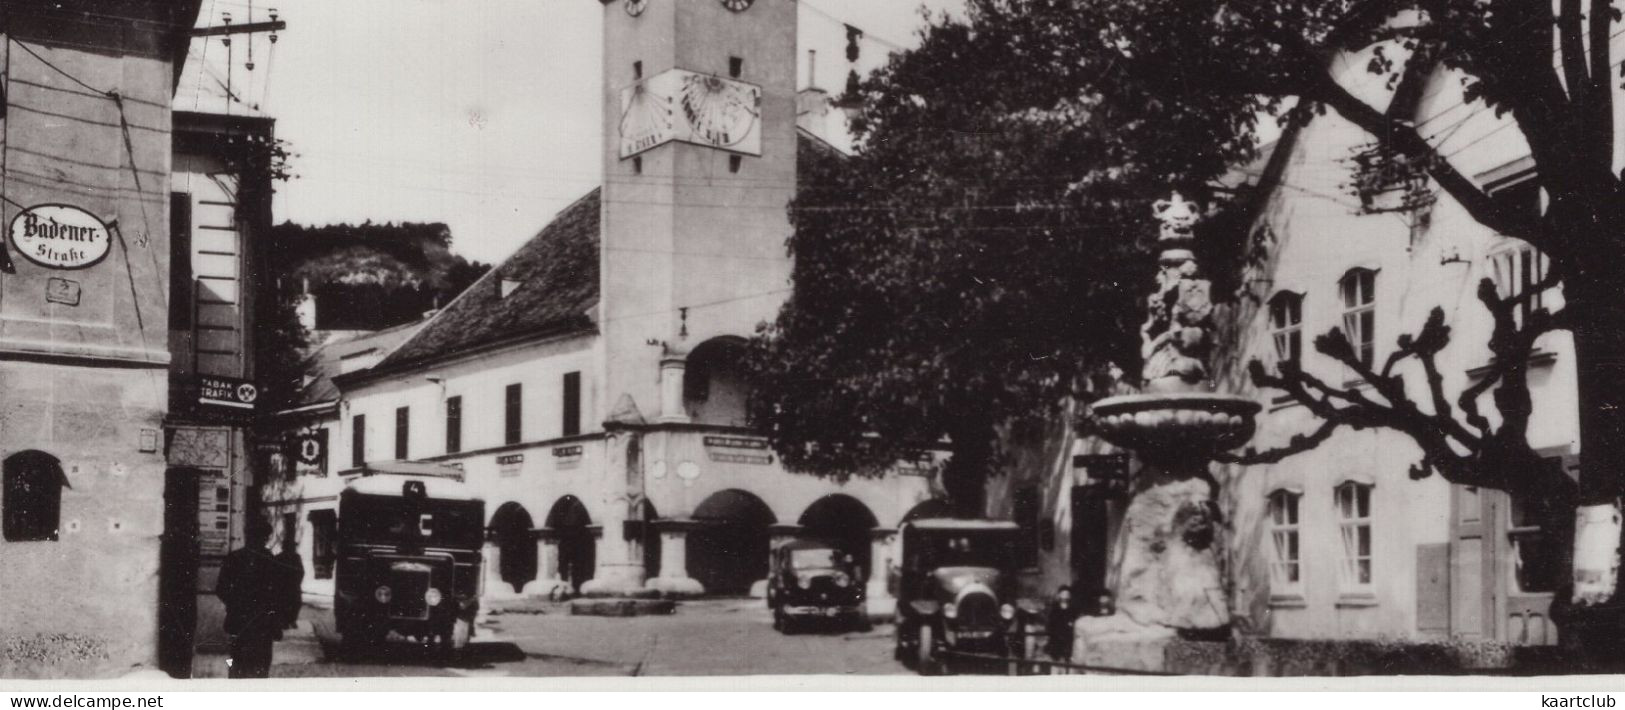 Gumpoldskirchen - Urkunde ! - (NÖ, Österreich) - Oldtimer Autobus, Auto's 1920's - Mödling